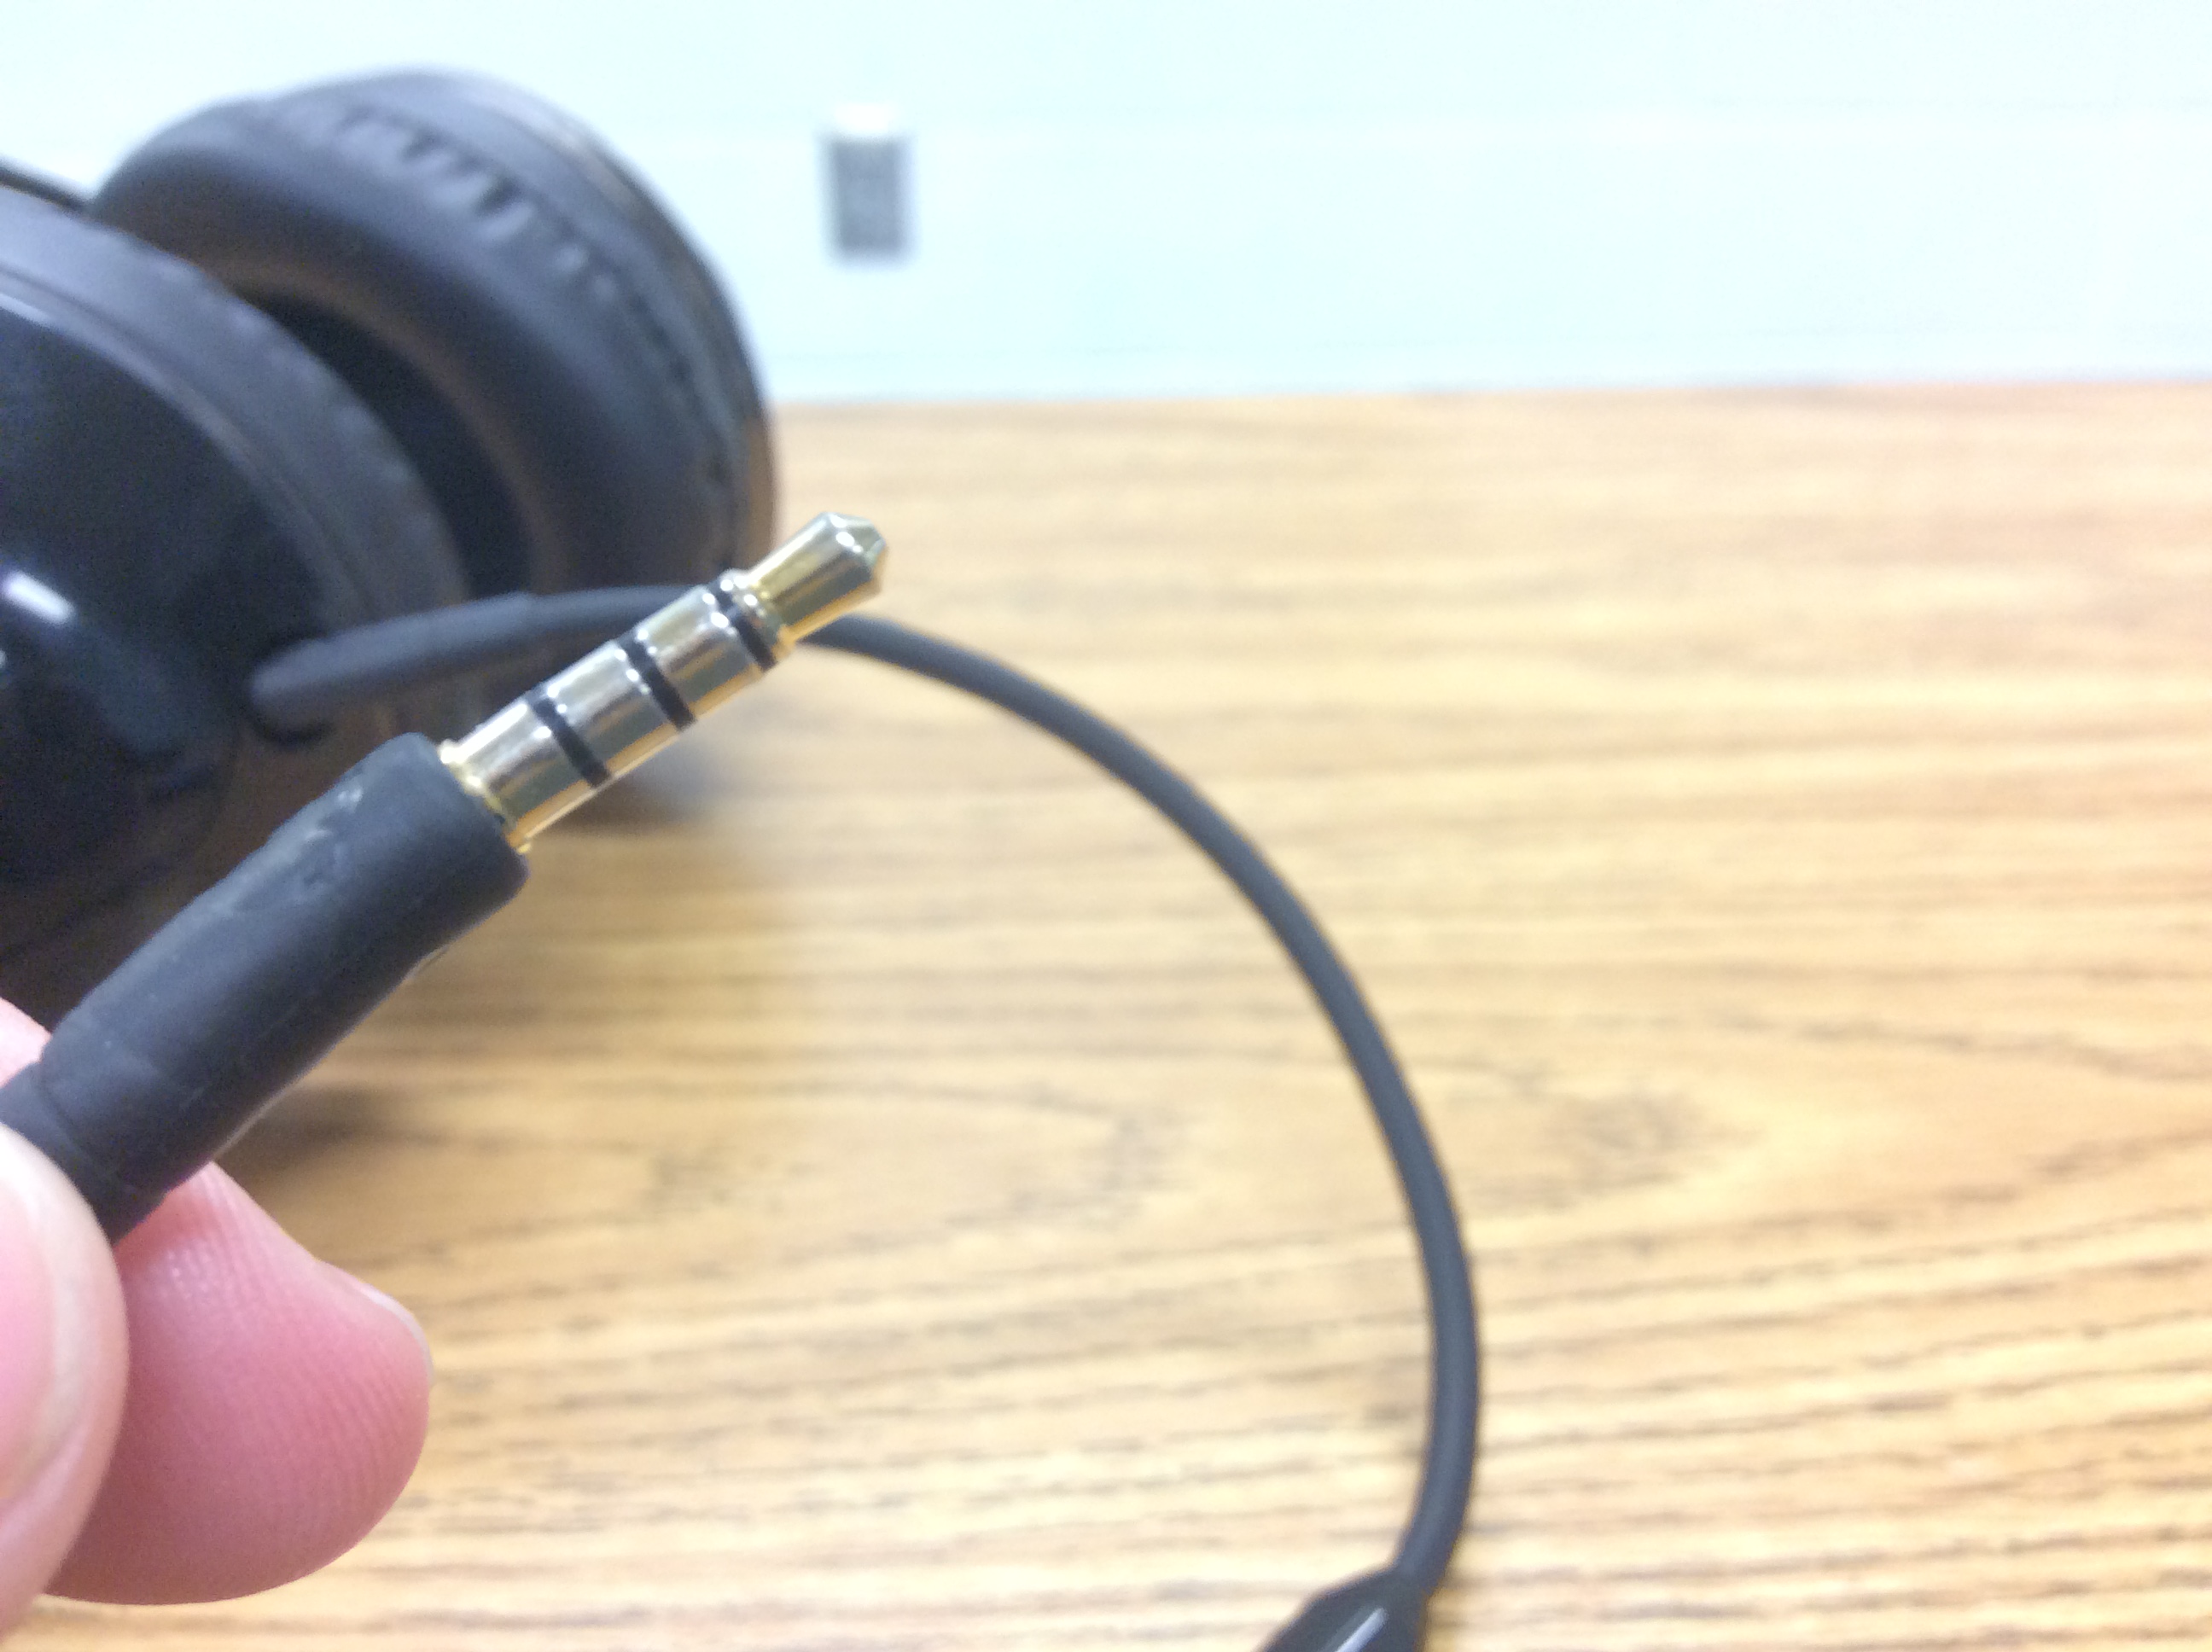 3.5 mm headphone jack bent, how to fix? - Audio - Linus Tech Tips